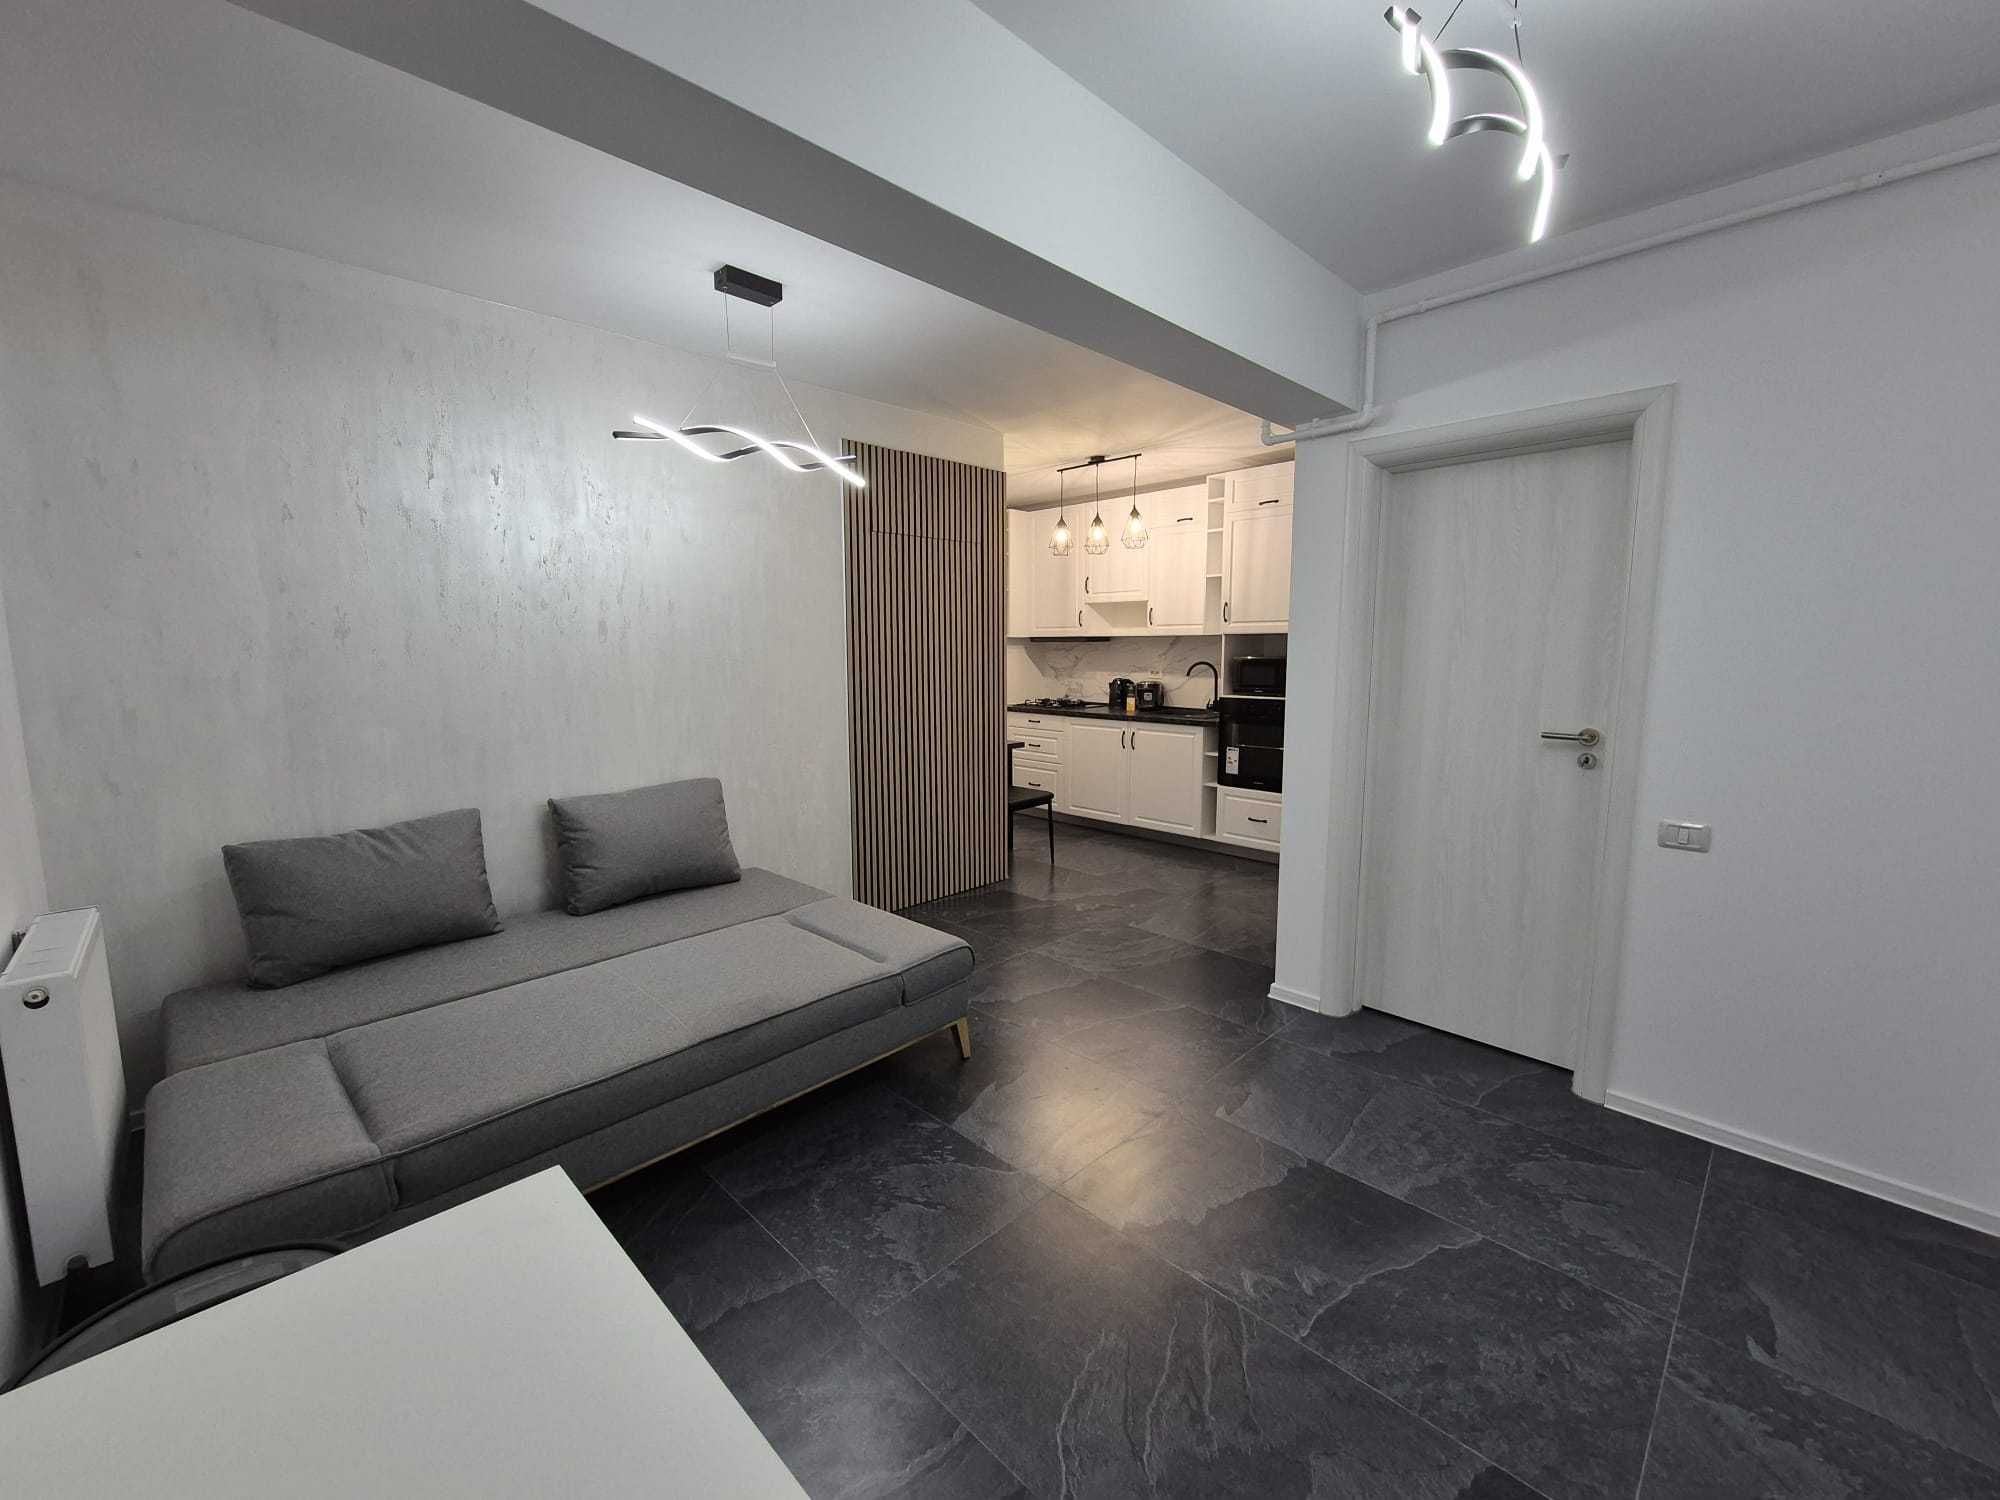 Apartament cu 2 camere nou, tip studio, zona Coresi